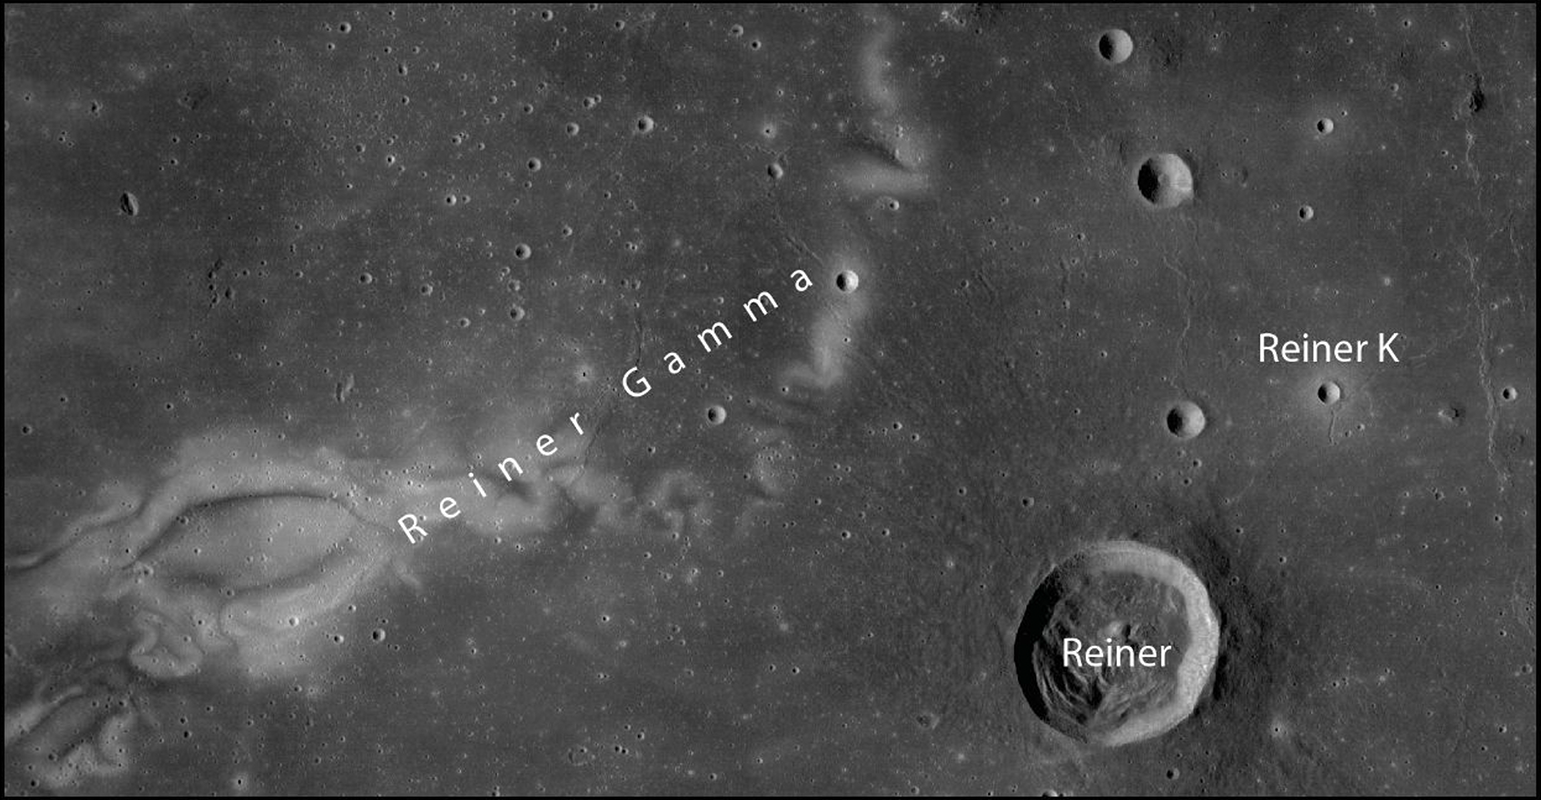 Die in der Arbeit entdeckten meterhohen Felsen befinden sich in der Nähe des Kraters Reiner K in der Region „Reiner Gamma“, die eine magnetische Anomalie aufweist.